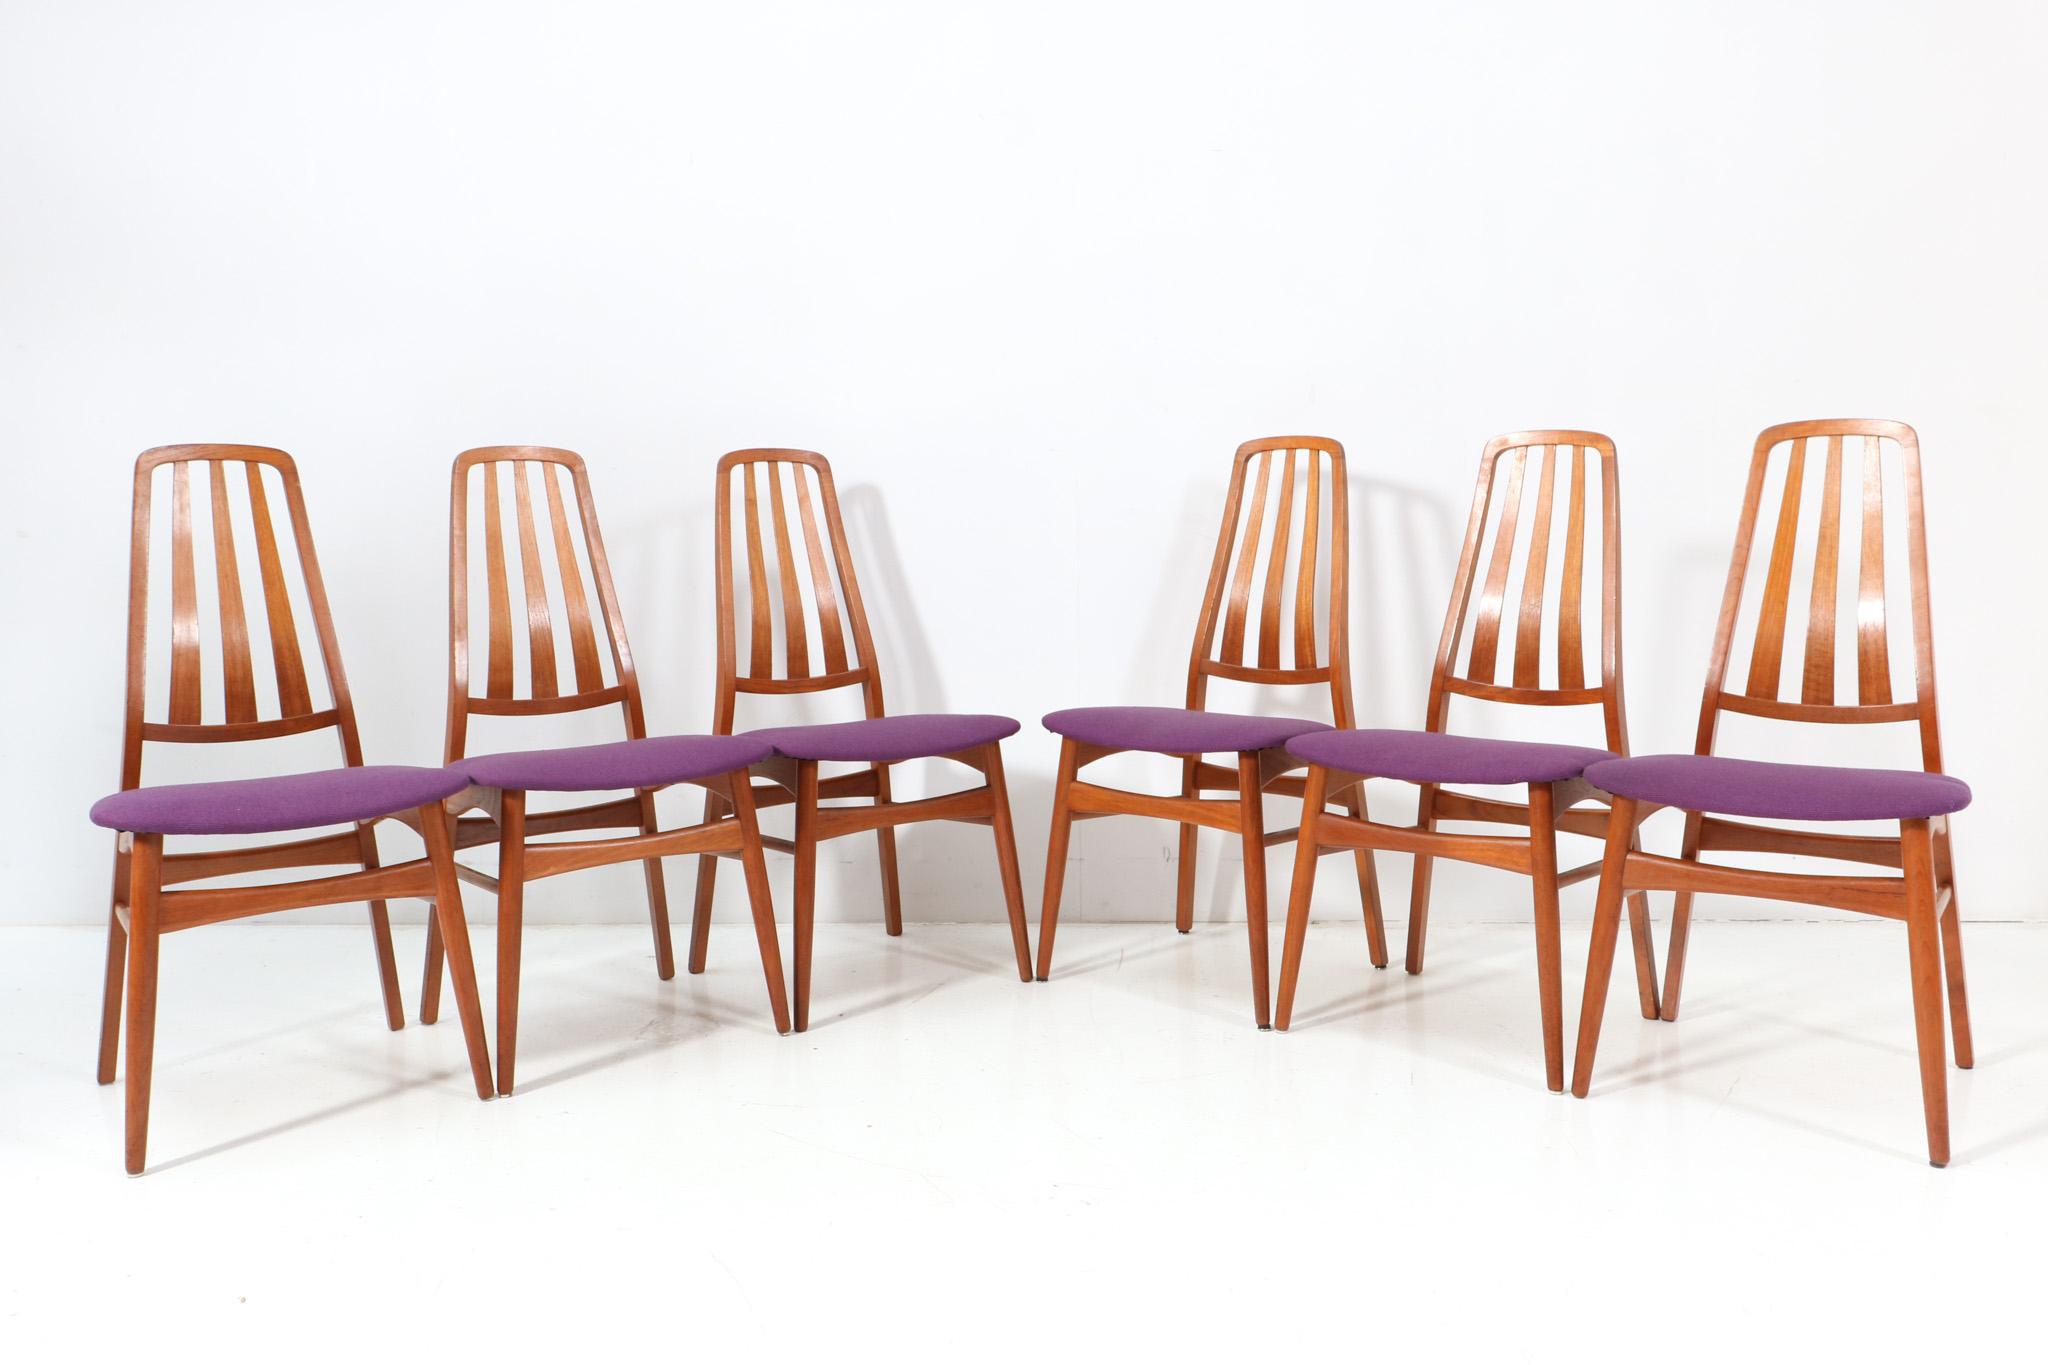 Atemberaubender Satz von sechs Mid-Century Modern Esszimmerstühlen.
Gekennzeichnet mit dem Original Label IMHA.
Auffälliges dänisches Design aus den 1960er Jahren.
Massive Teakholzrahmen mit hoher Rückenlehne.
Die Sitze sind mit violettem Stoff neu